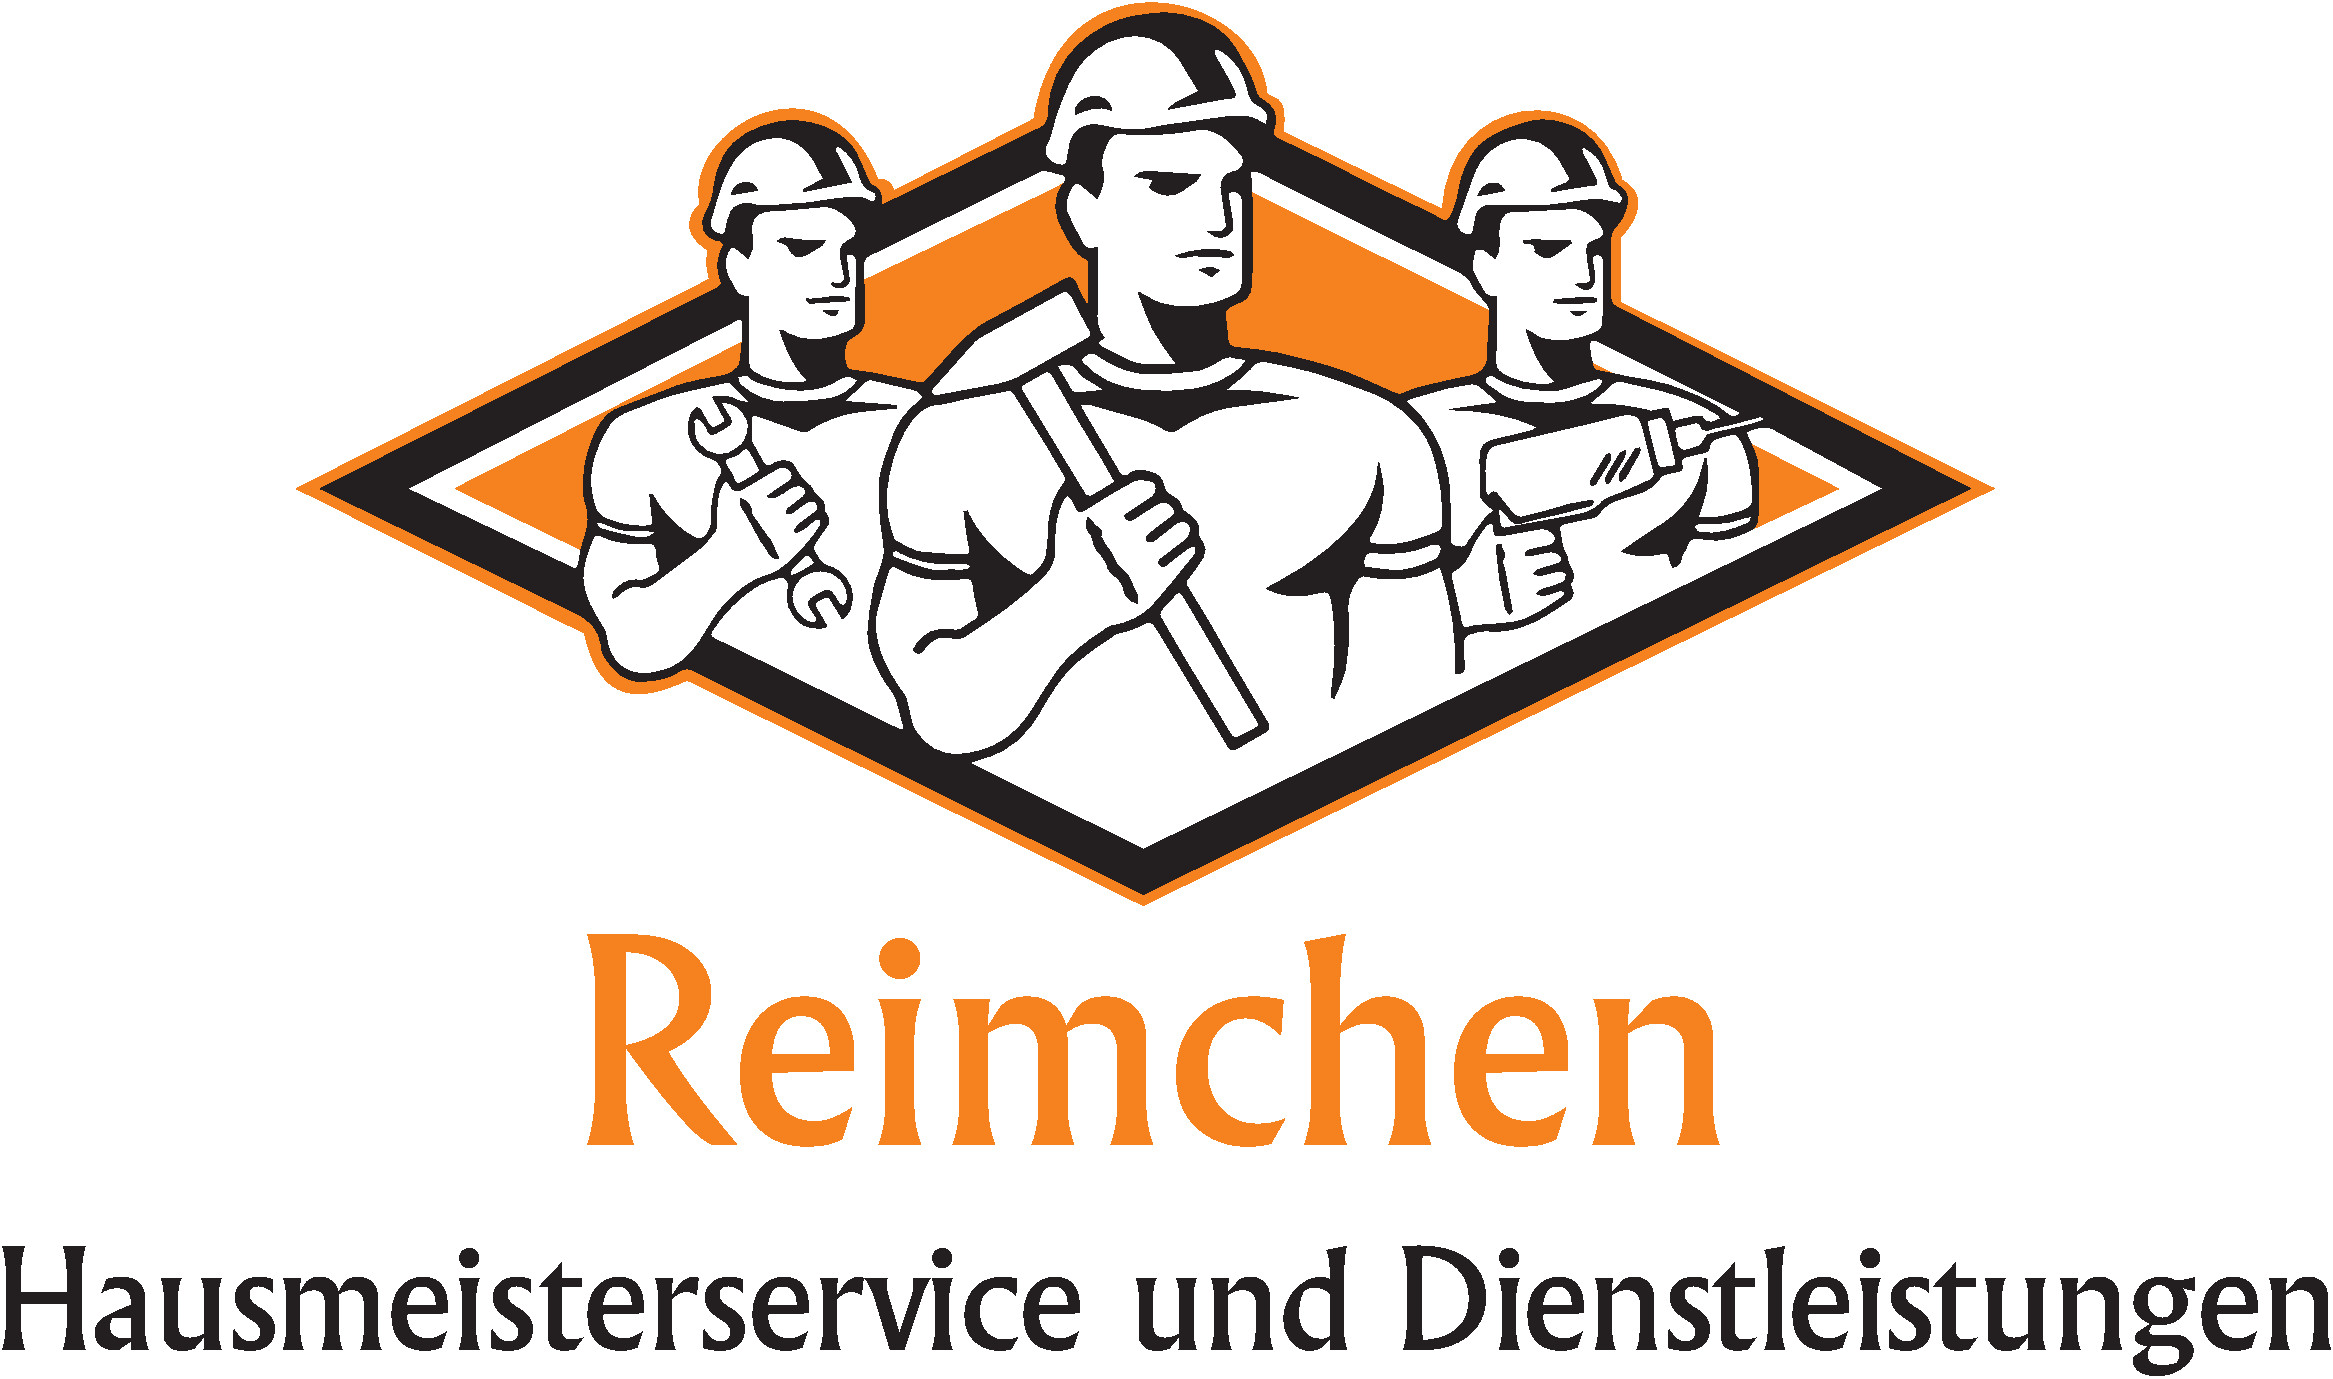 Reimchen – Hausmeisterservice und Dienstleistungen